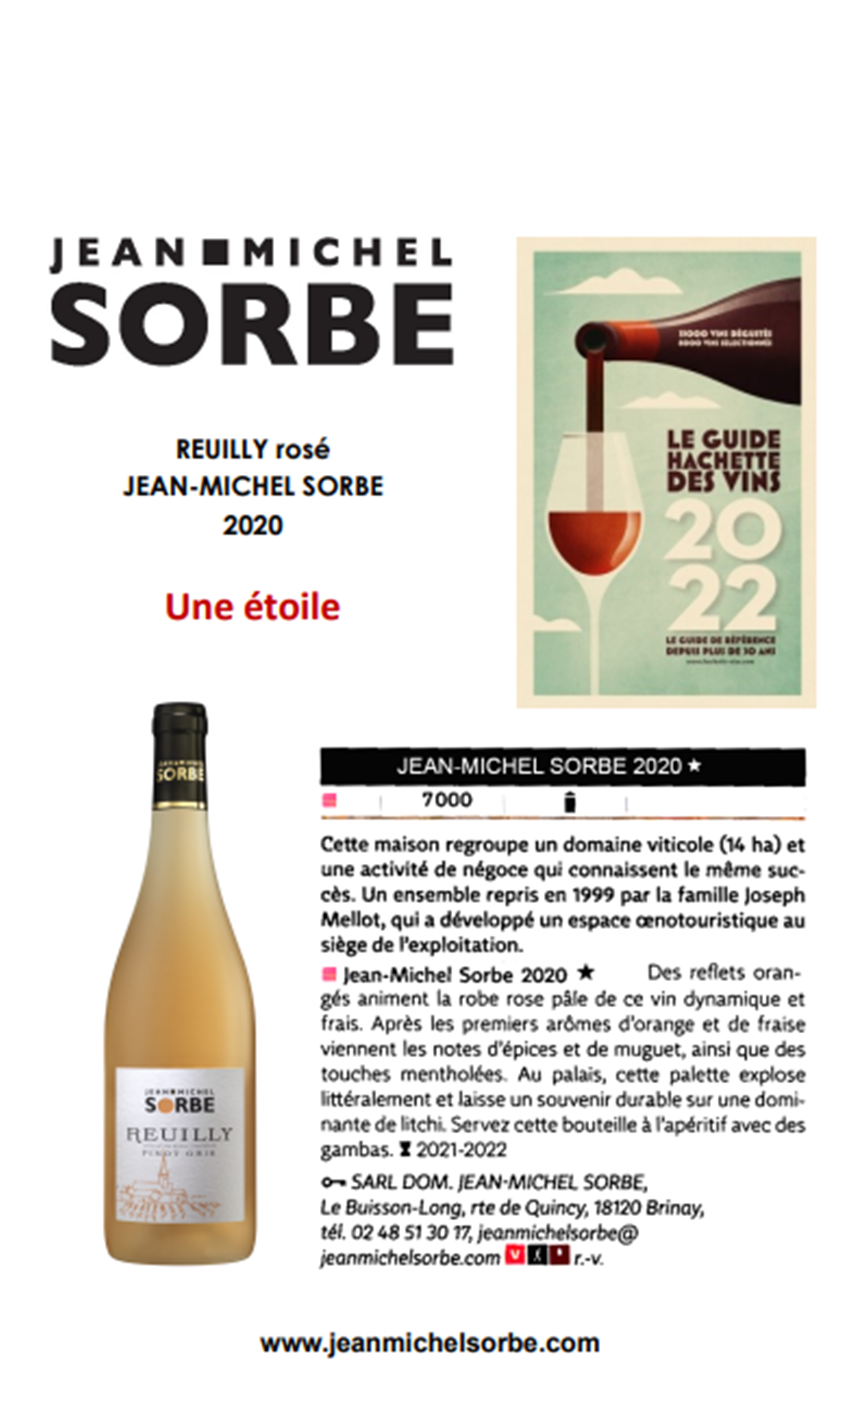 Le Reuilly Rosé Jean-Michel Sorbe recommandé dans le Guide Hachette des vins 2022